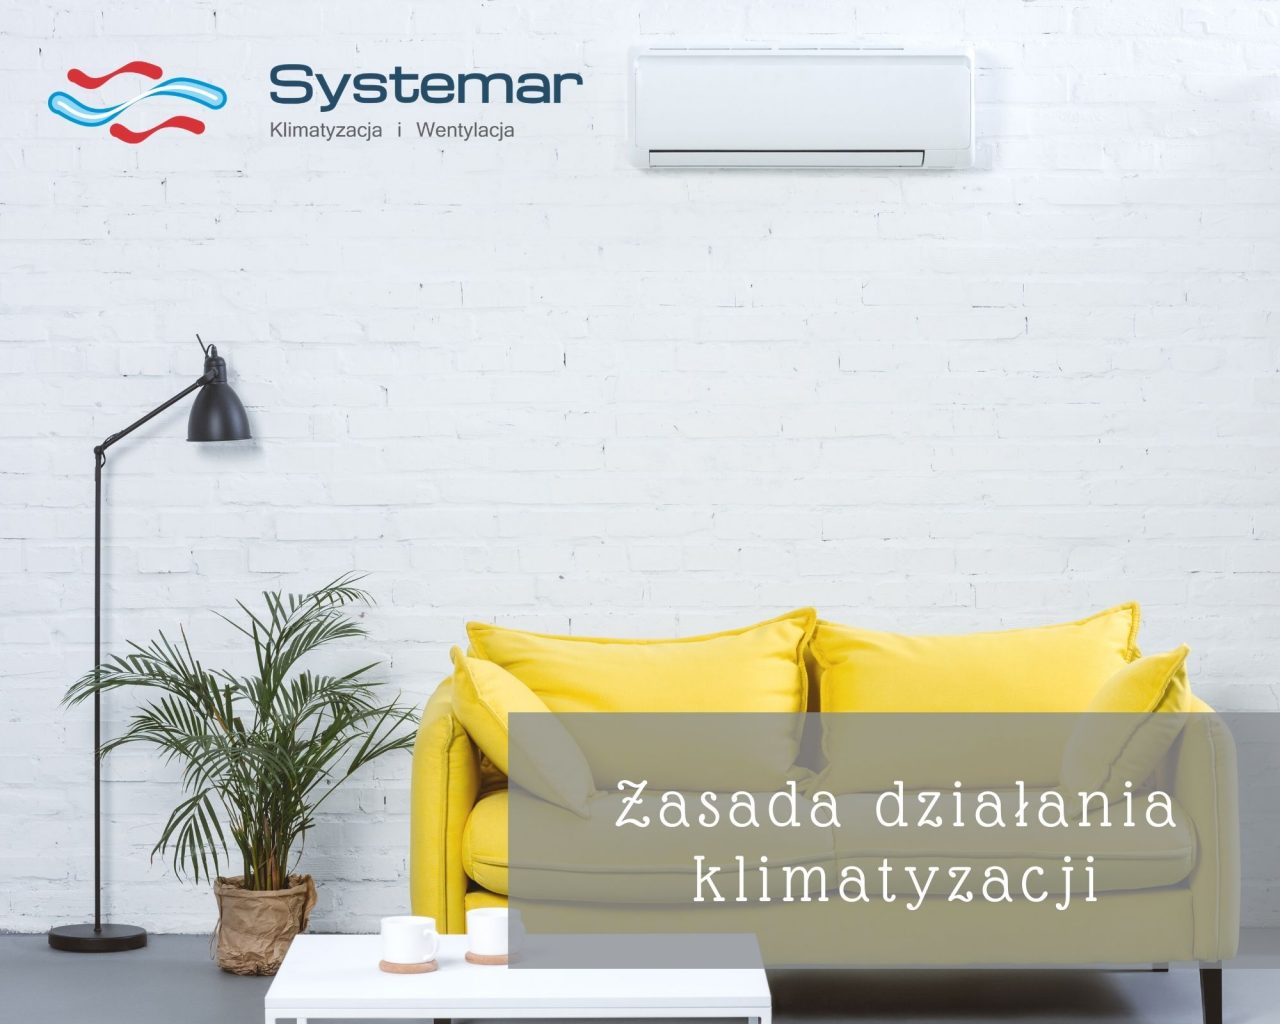 https://systemar.pl/wp-content/uploads/2021/01/zasada-dzialania-klimatyzacji-1280x1024.jpg